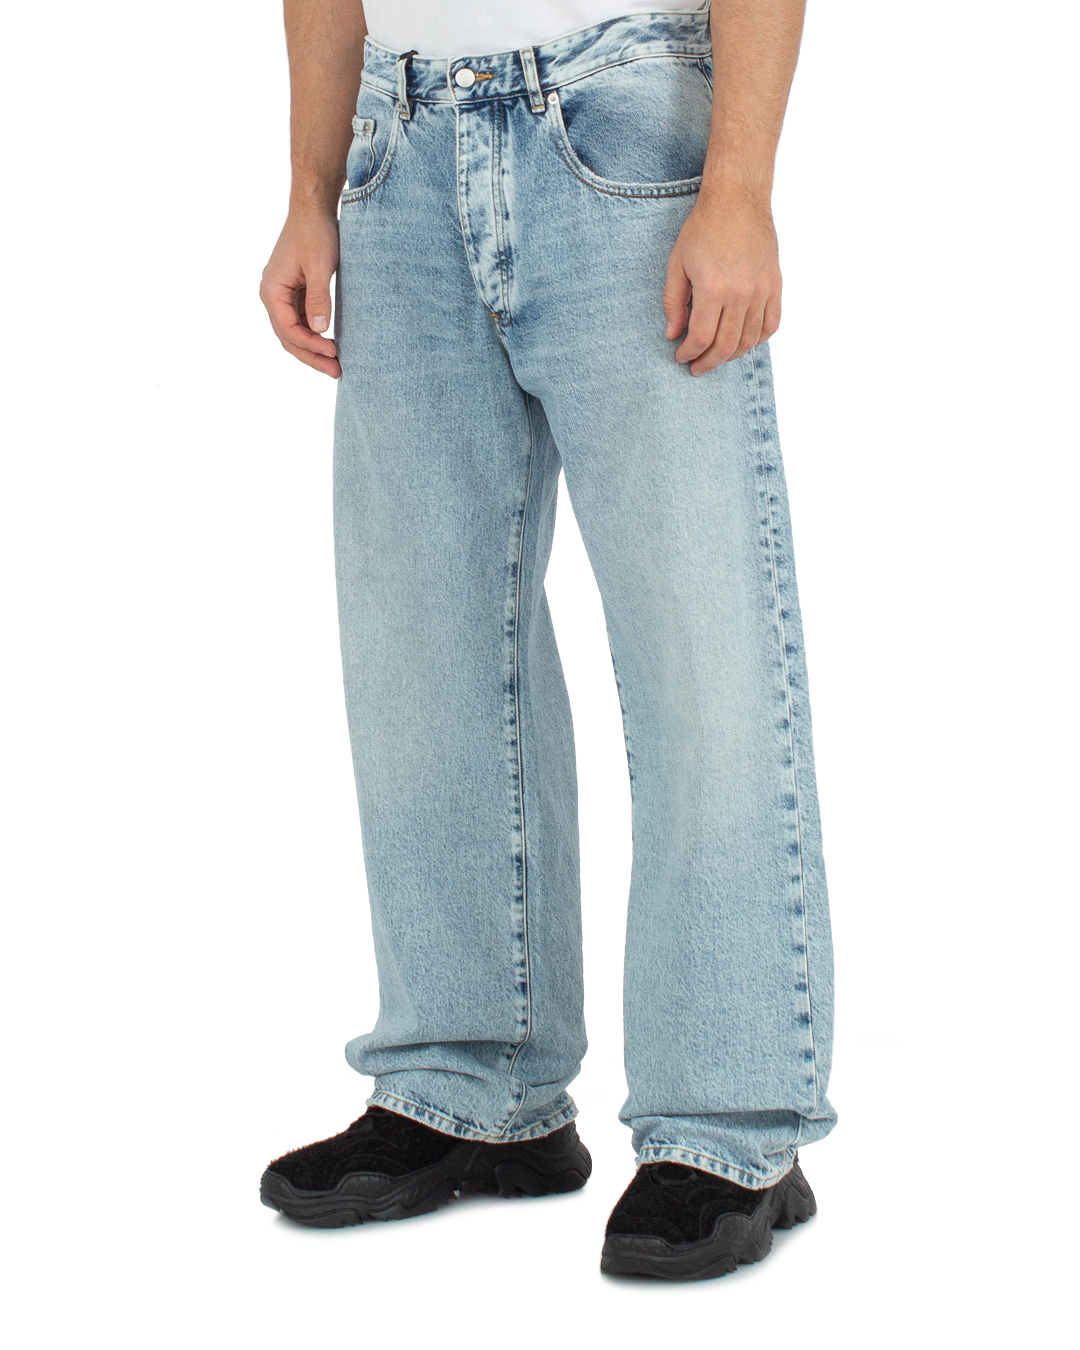 джинсы ICON DENIM WILL ID869 голубой 35, размер 35 - фото 2